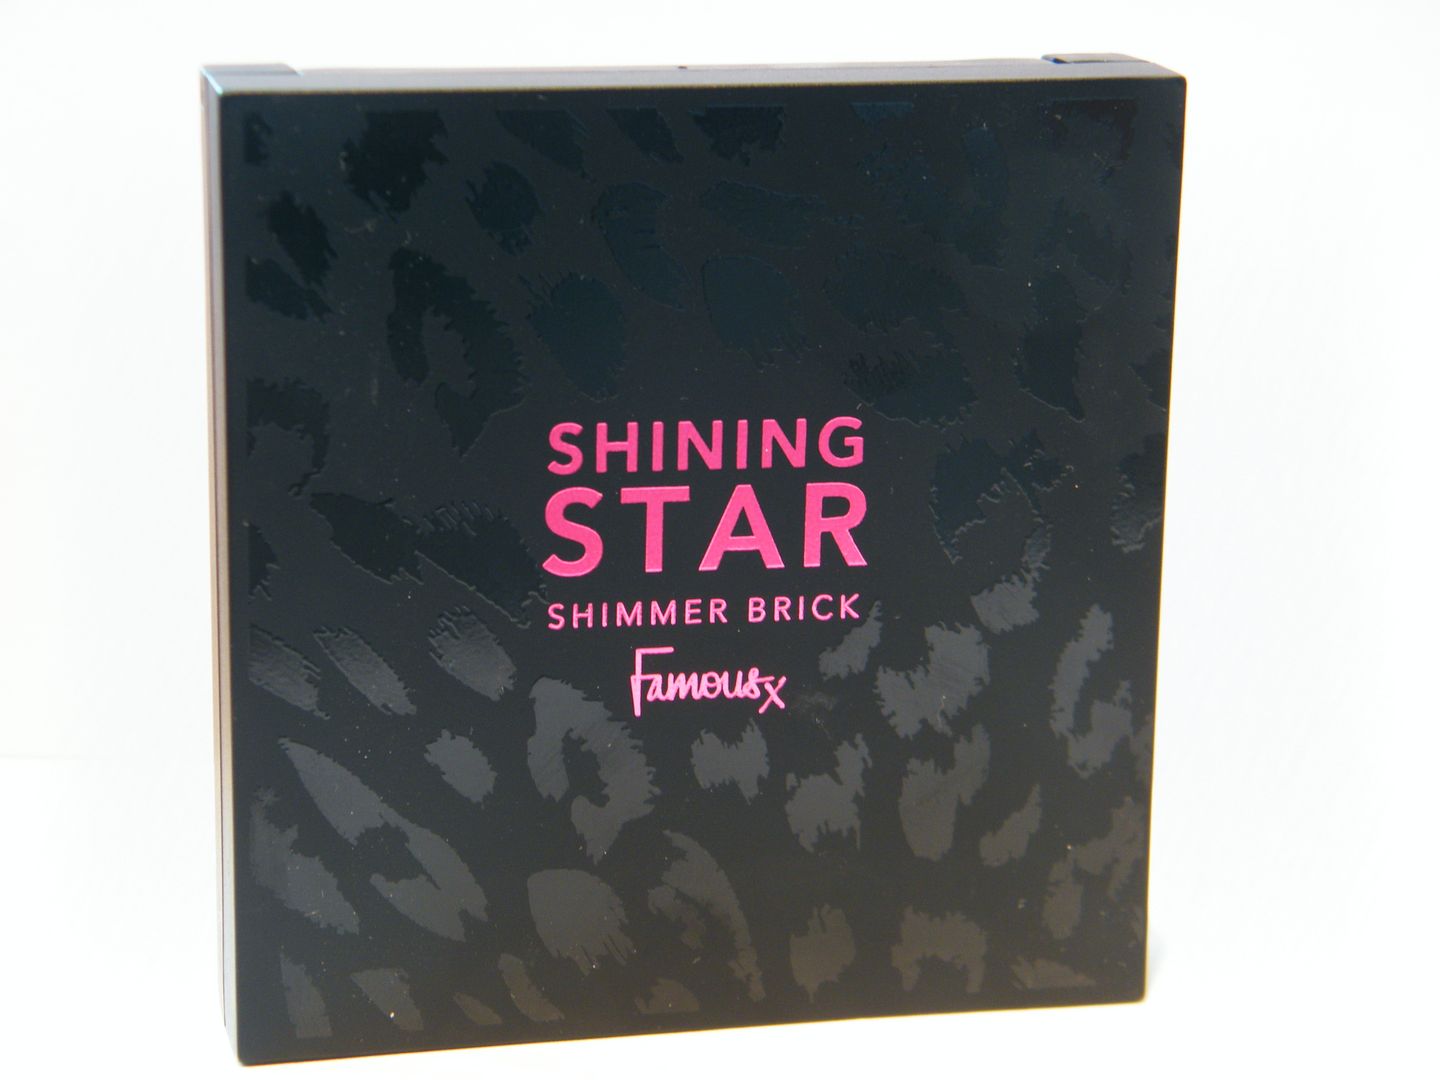 Famous Cosmetics Shining Star Shimmer Brick in Rihanna Shimmer